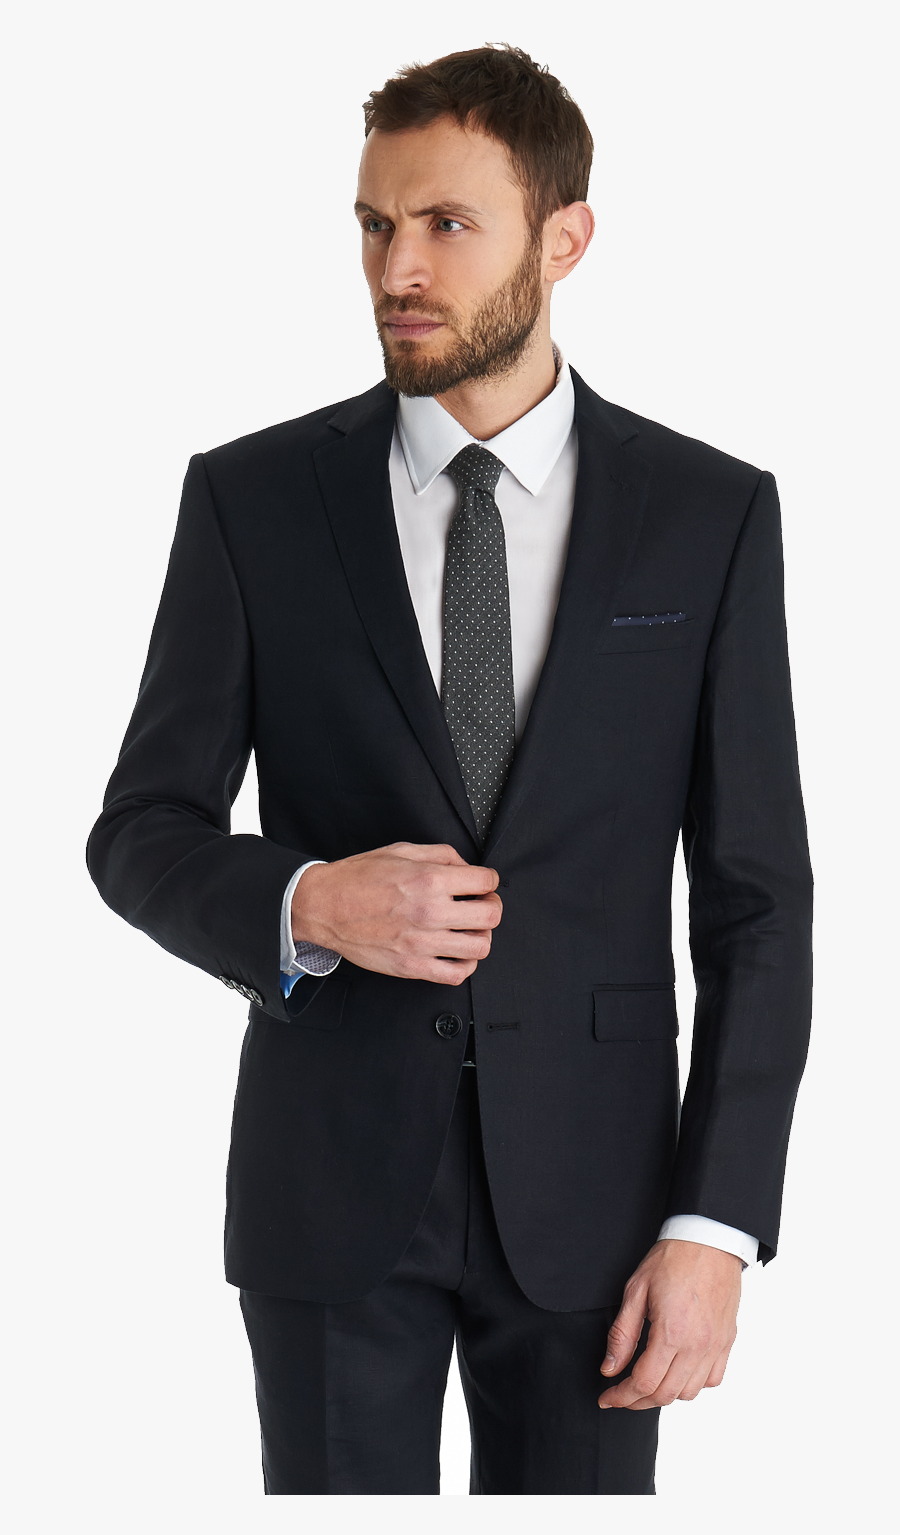 Suit Clipart Transparent Png Images - Blackberry Suits For Men, Transparent Clipart